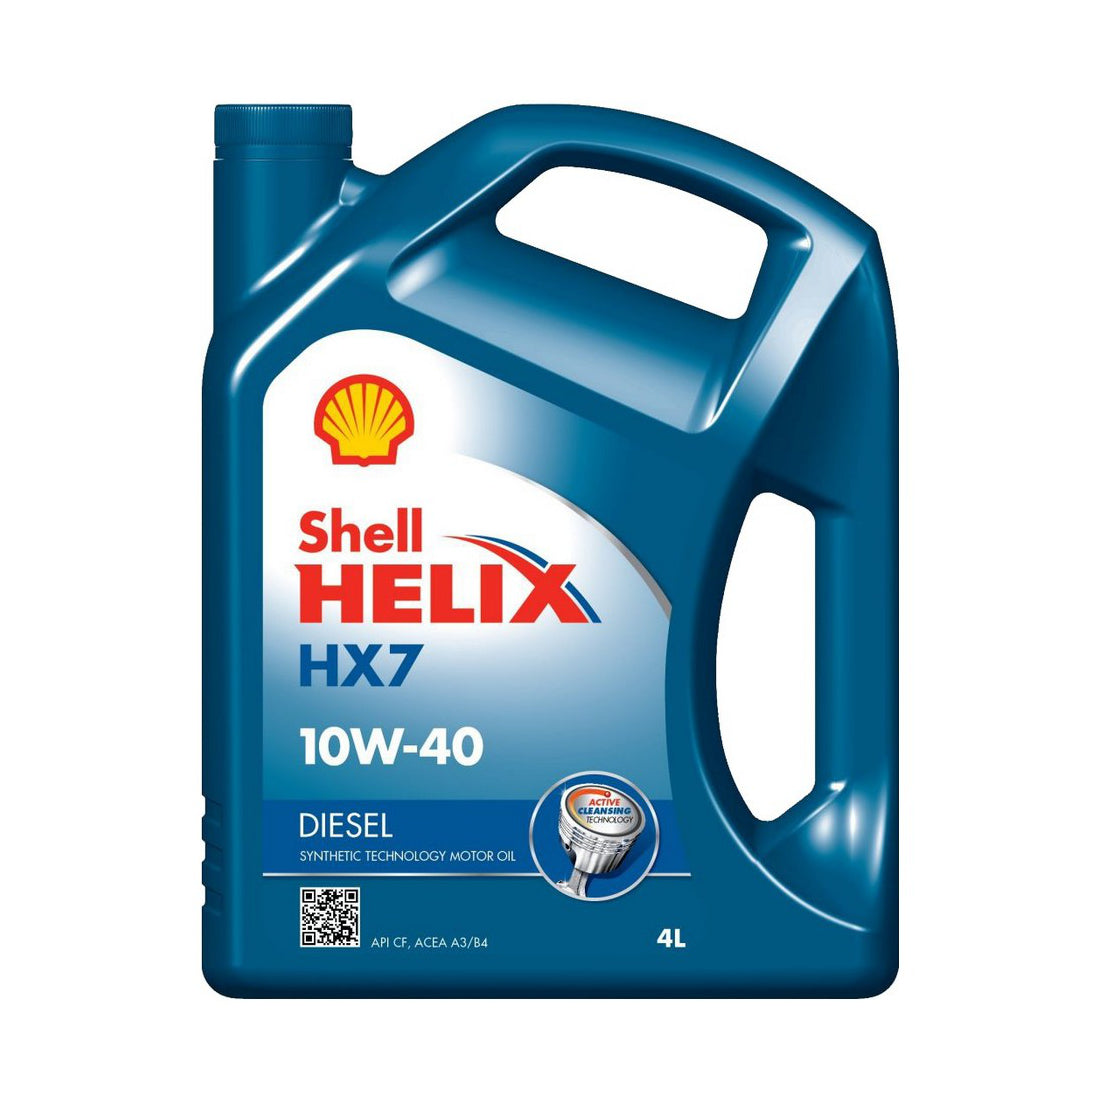 Shell Helix HX7 Diesel 10W-40 H